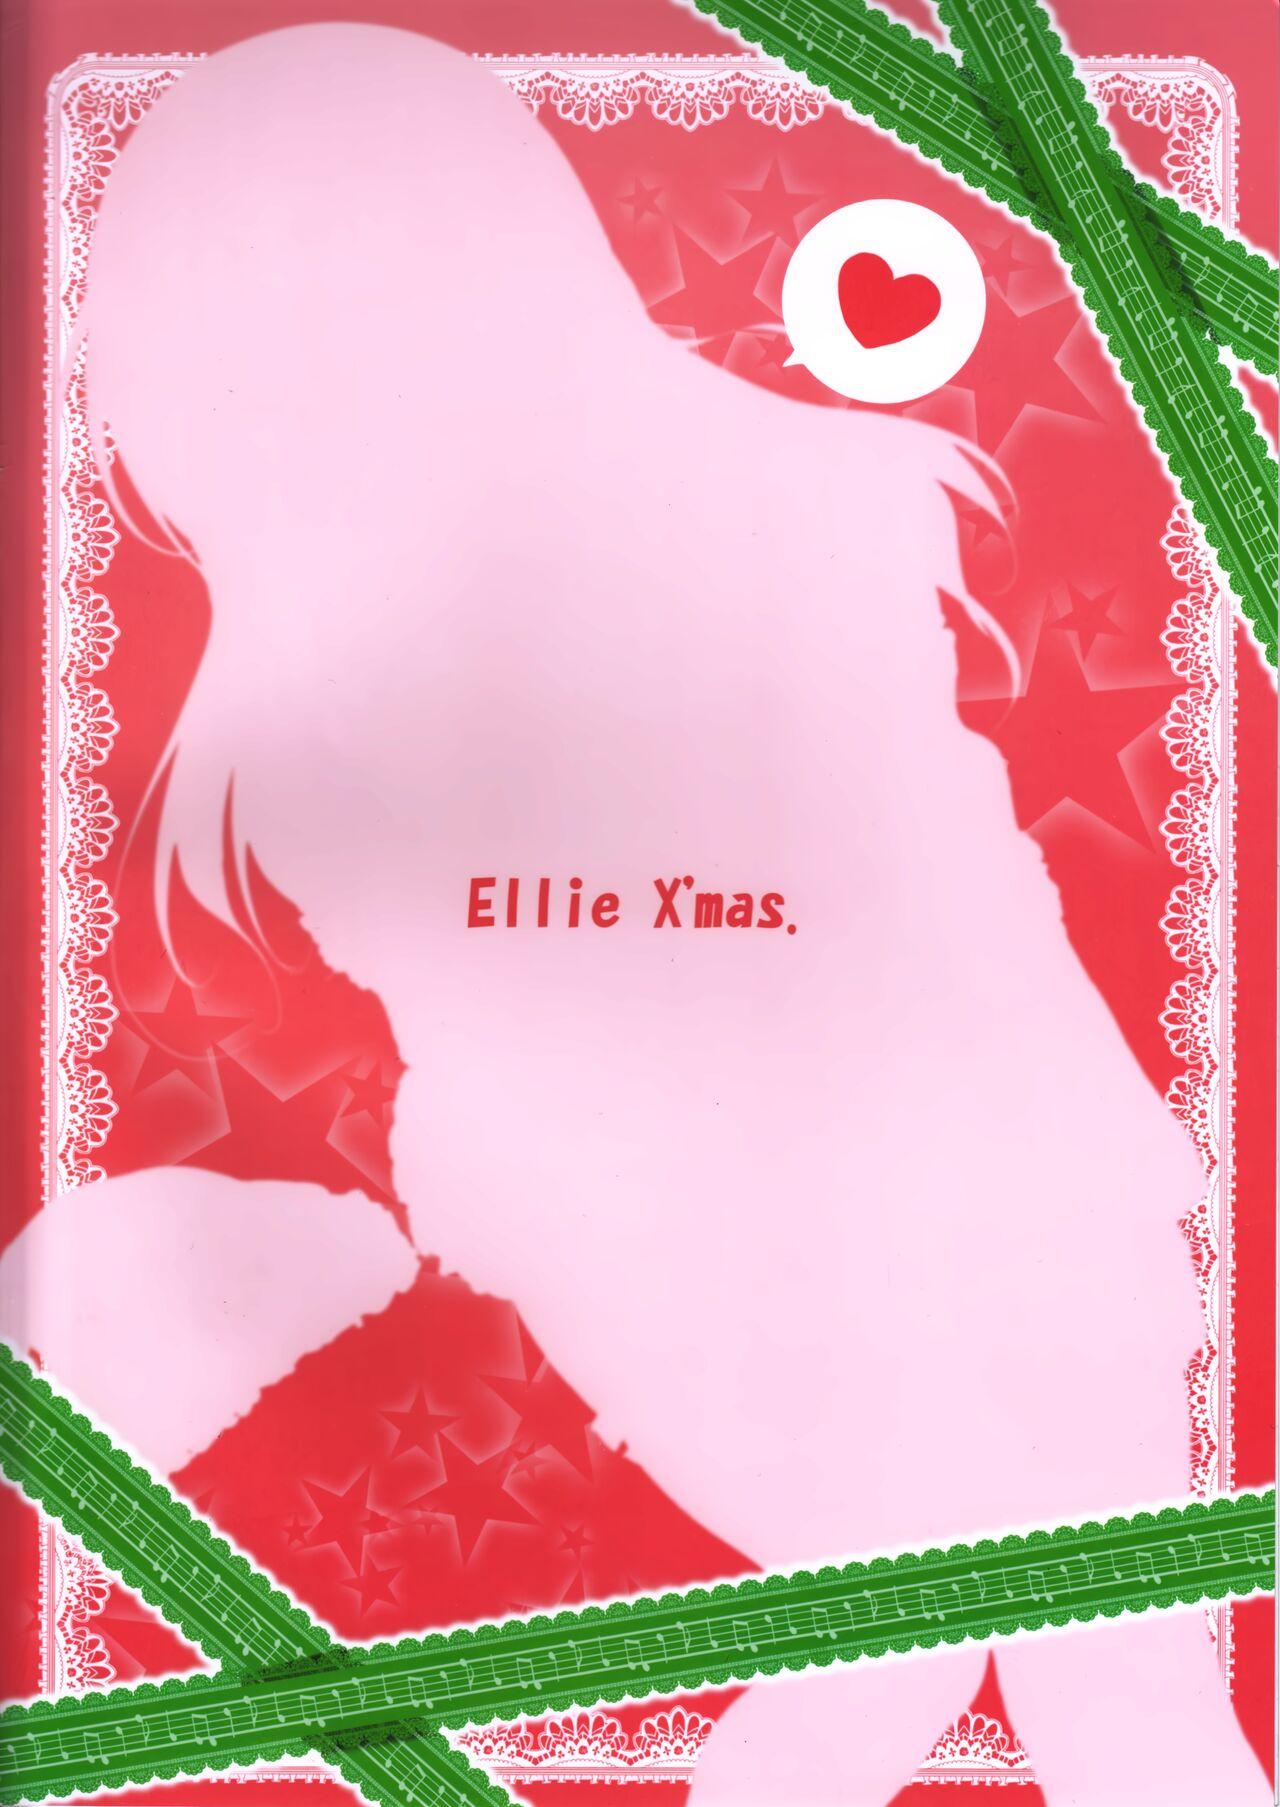 Ellie X'mas. 25